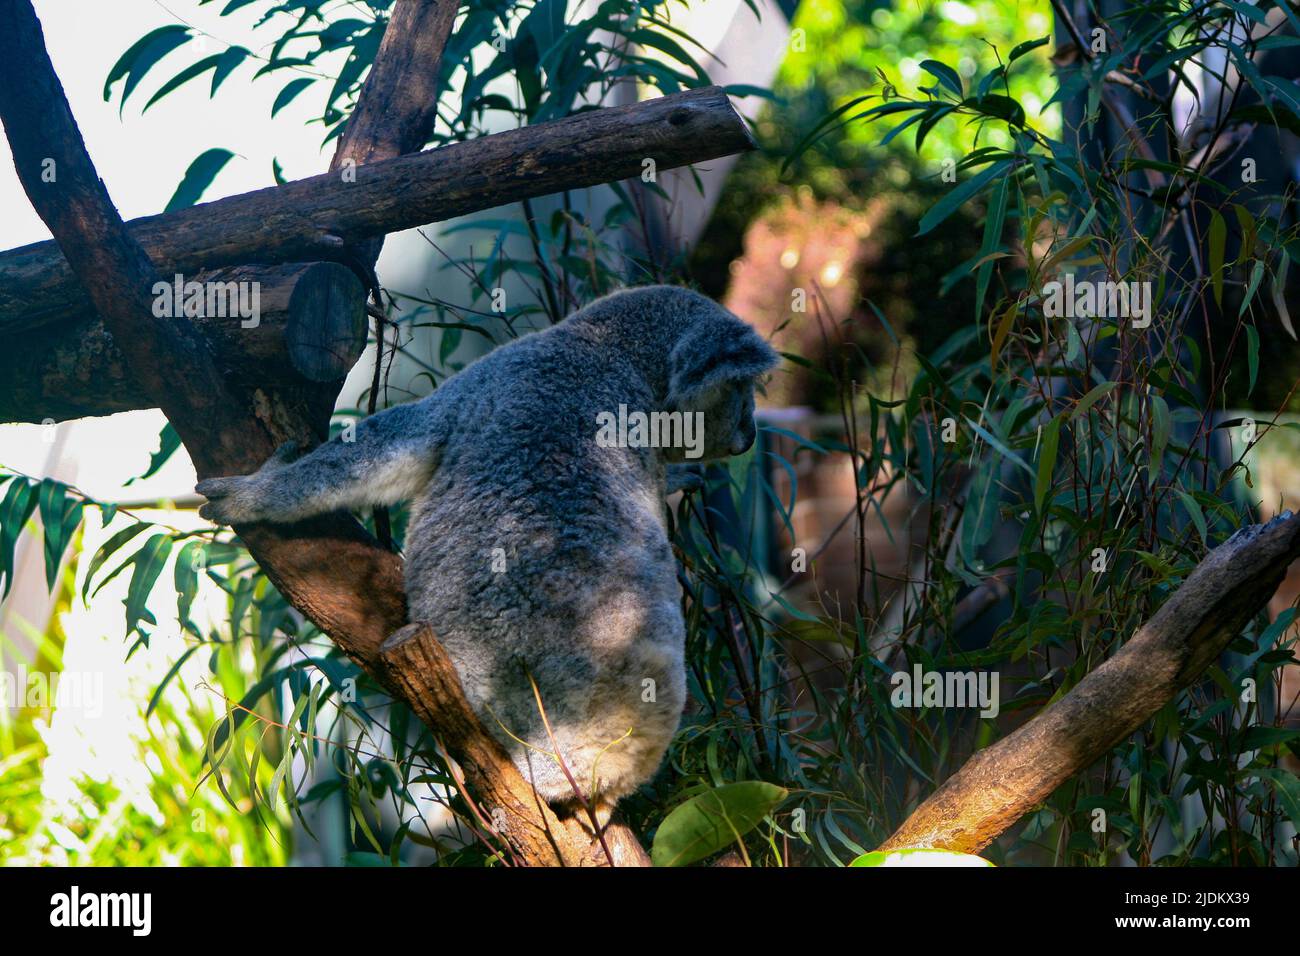 Awake Koala climbing a tree Stock Photo